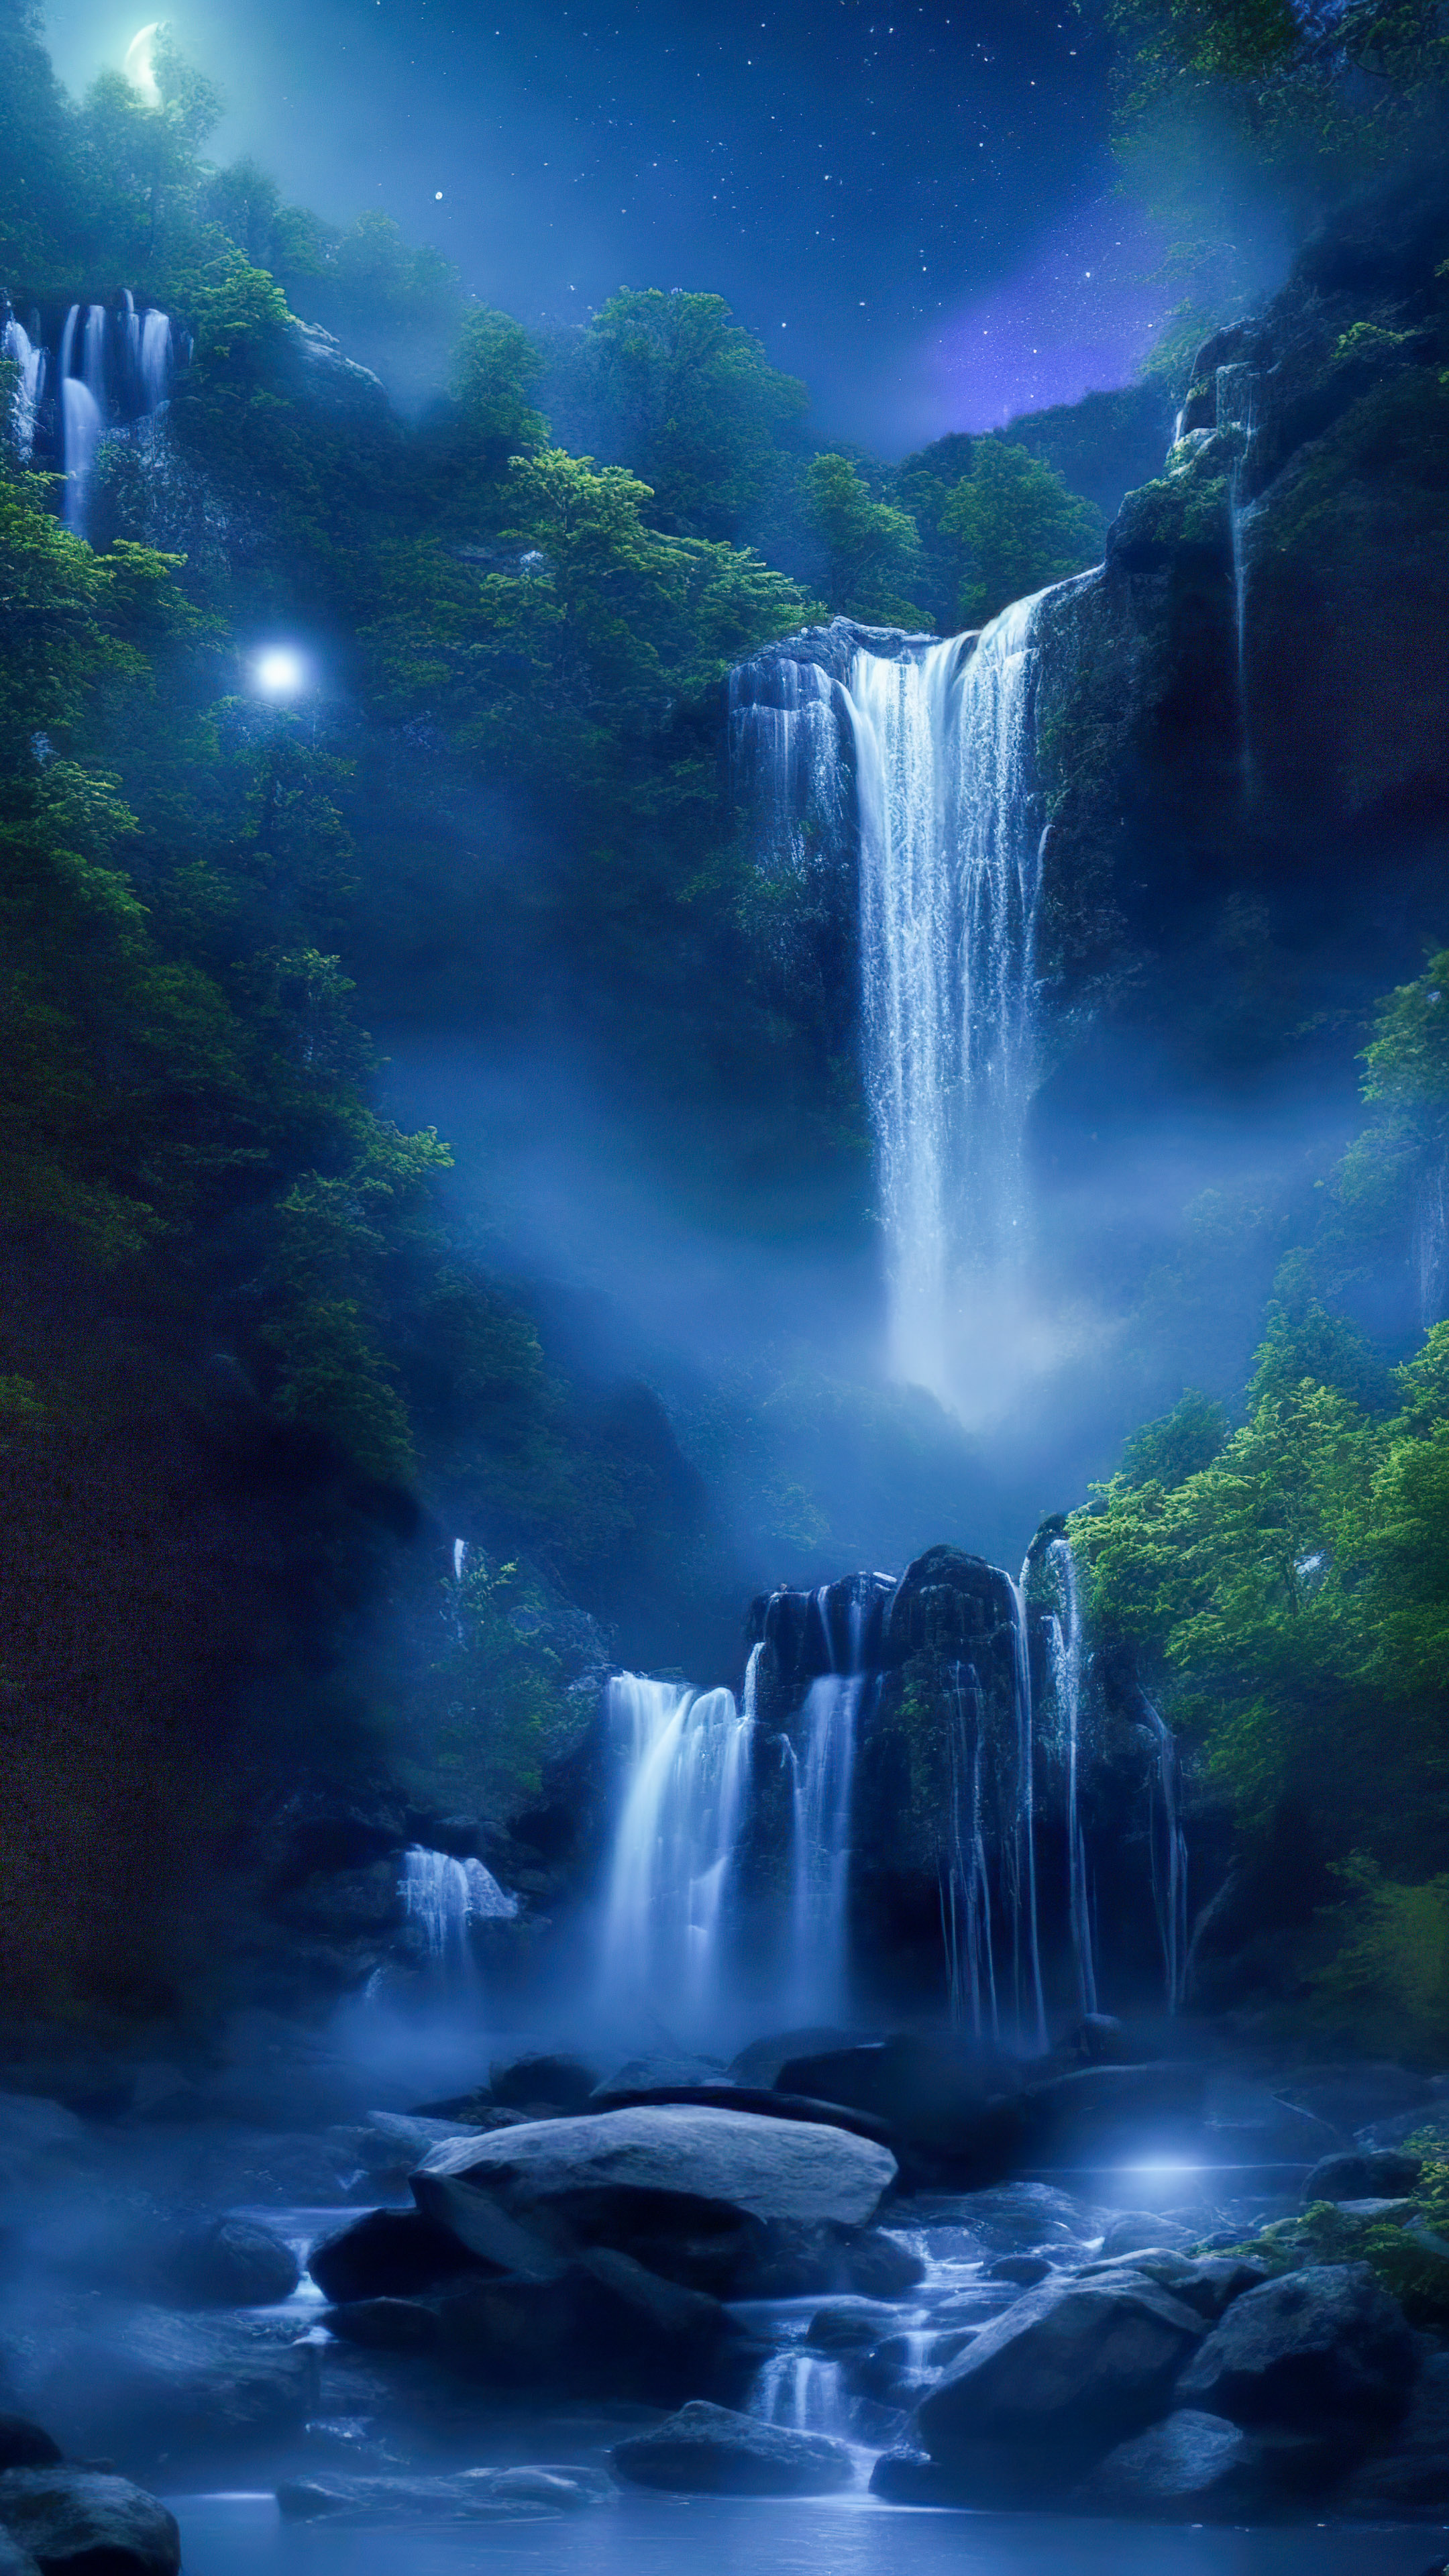 Téléchargez la magie de notre fond d'écran de nuit cool, illustrant une cascade magique illuminée par le clair de lune, avec des lucioles dansant autour de ses eaux en cascade.